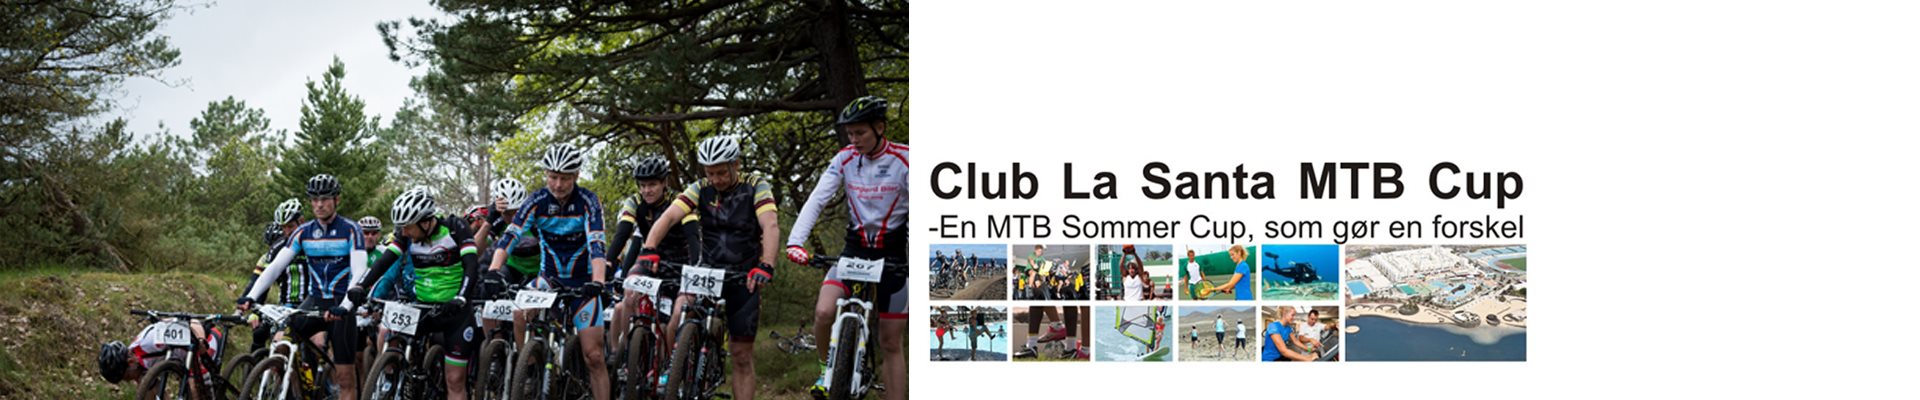 CLUB LA SANTA MTB CUP '21- Samlet CUP